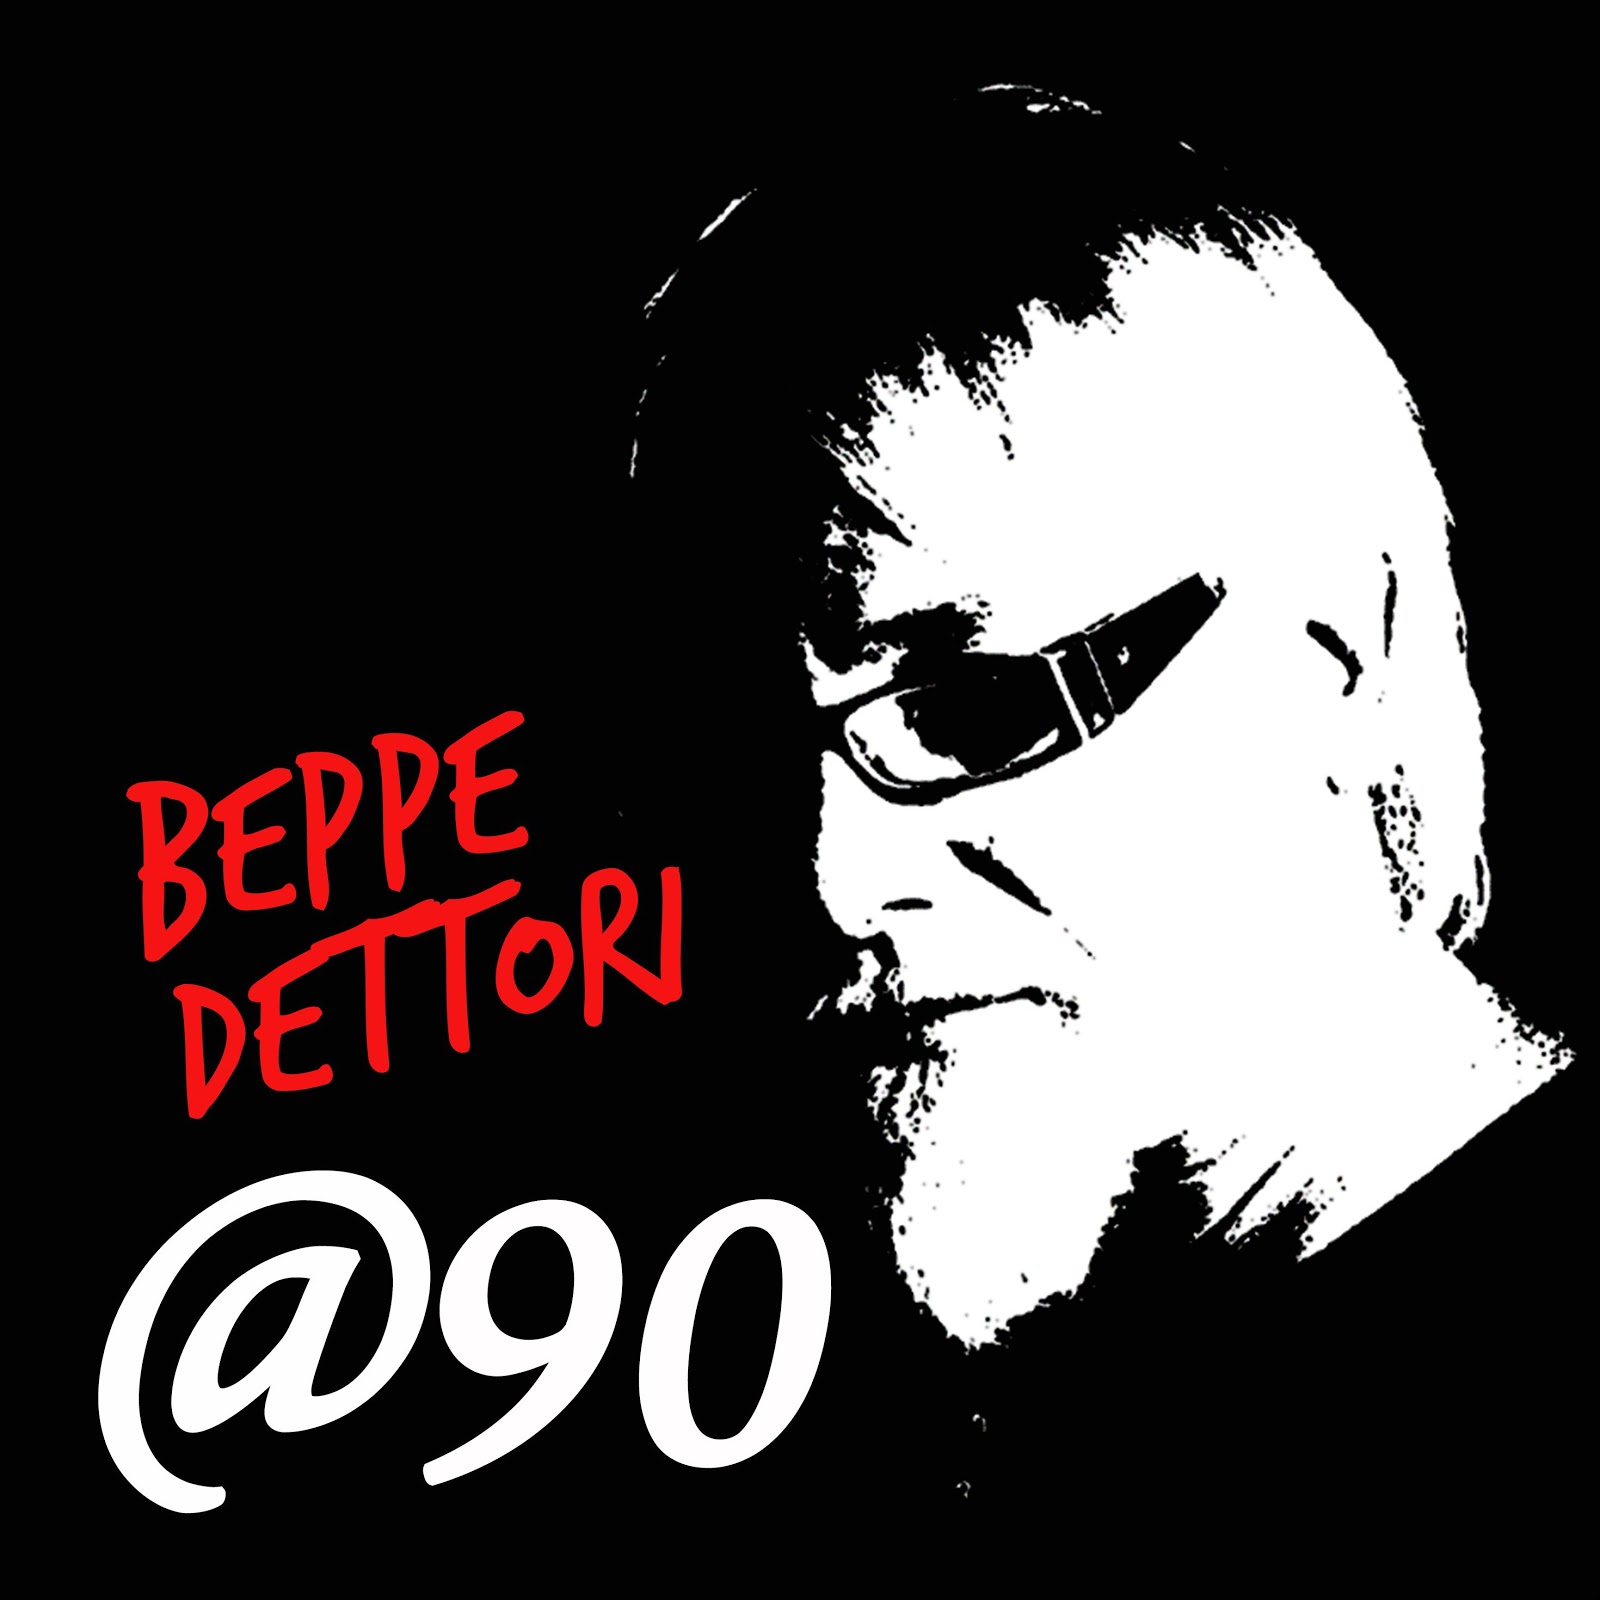 BEPPE DETTORI, “MENTRE PASSA” è il secondo singolo estratto dall’album @90